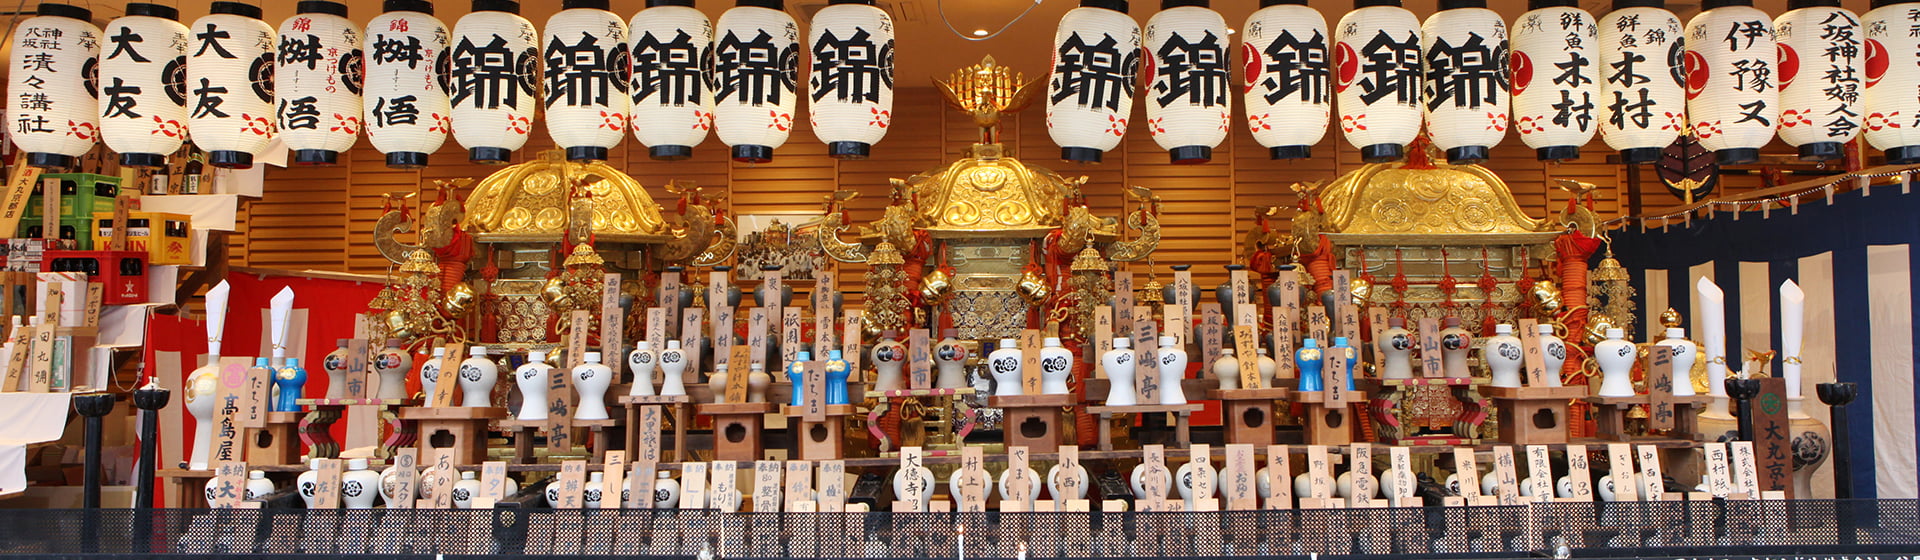 祇園祭と八坂神社